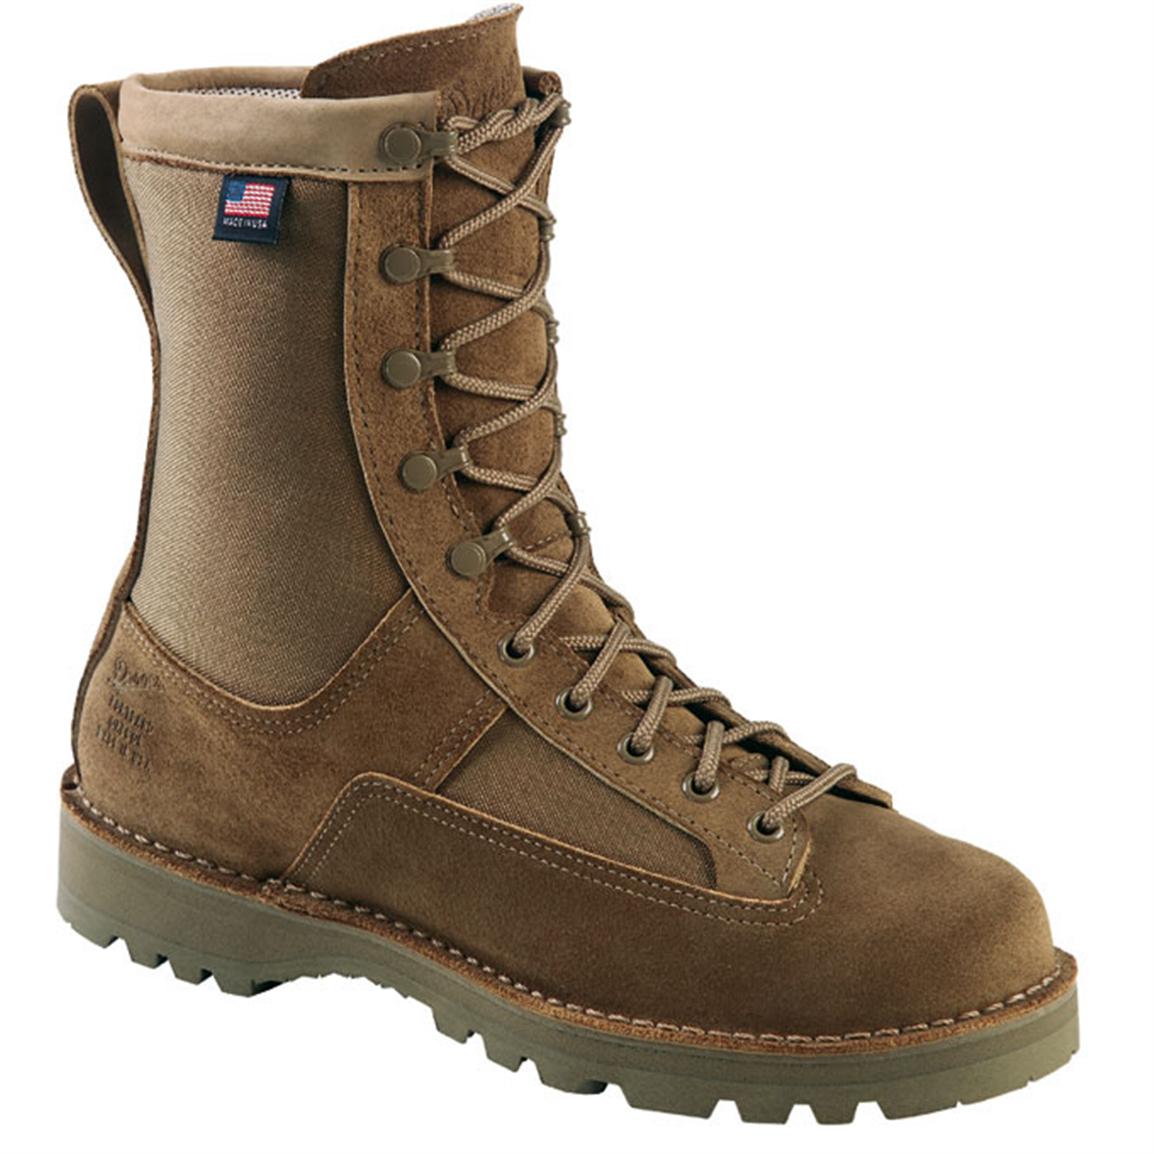 Men's Danner® Elite Series Desert Acadia 8" Boots, Tan - 87510, Combat